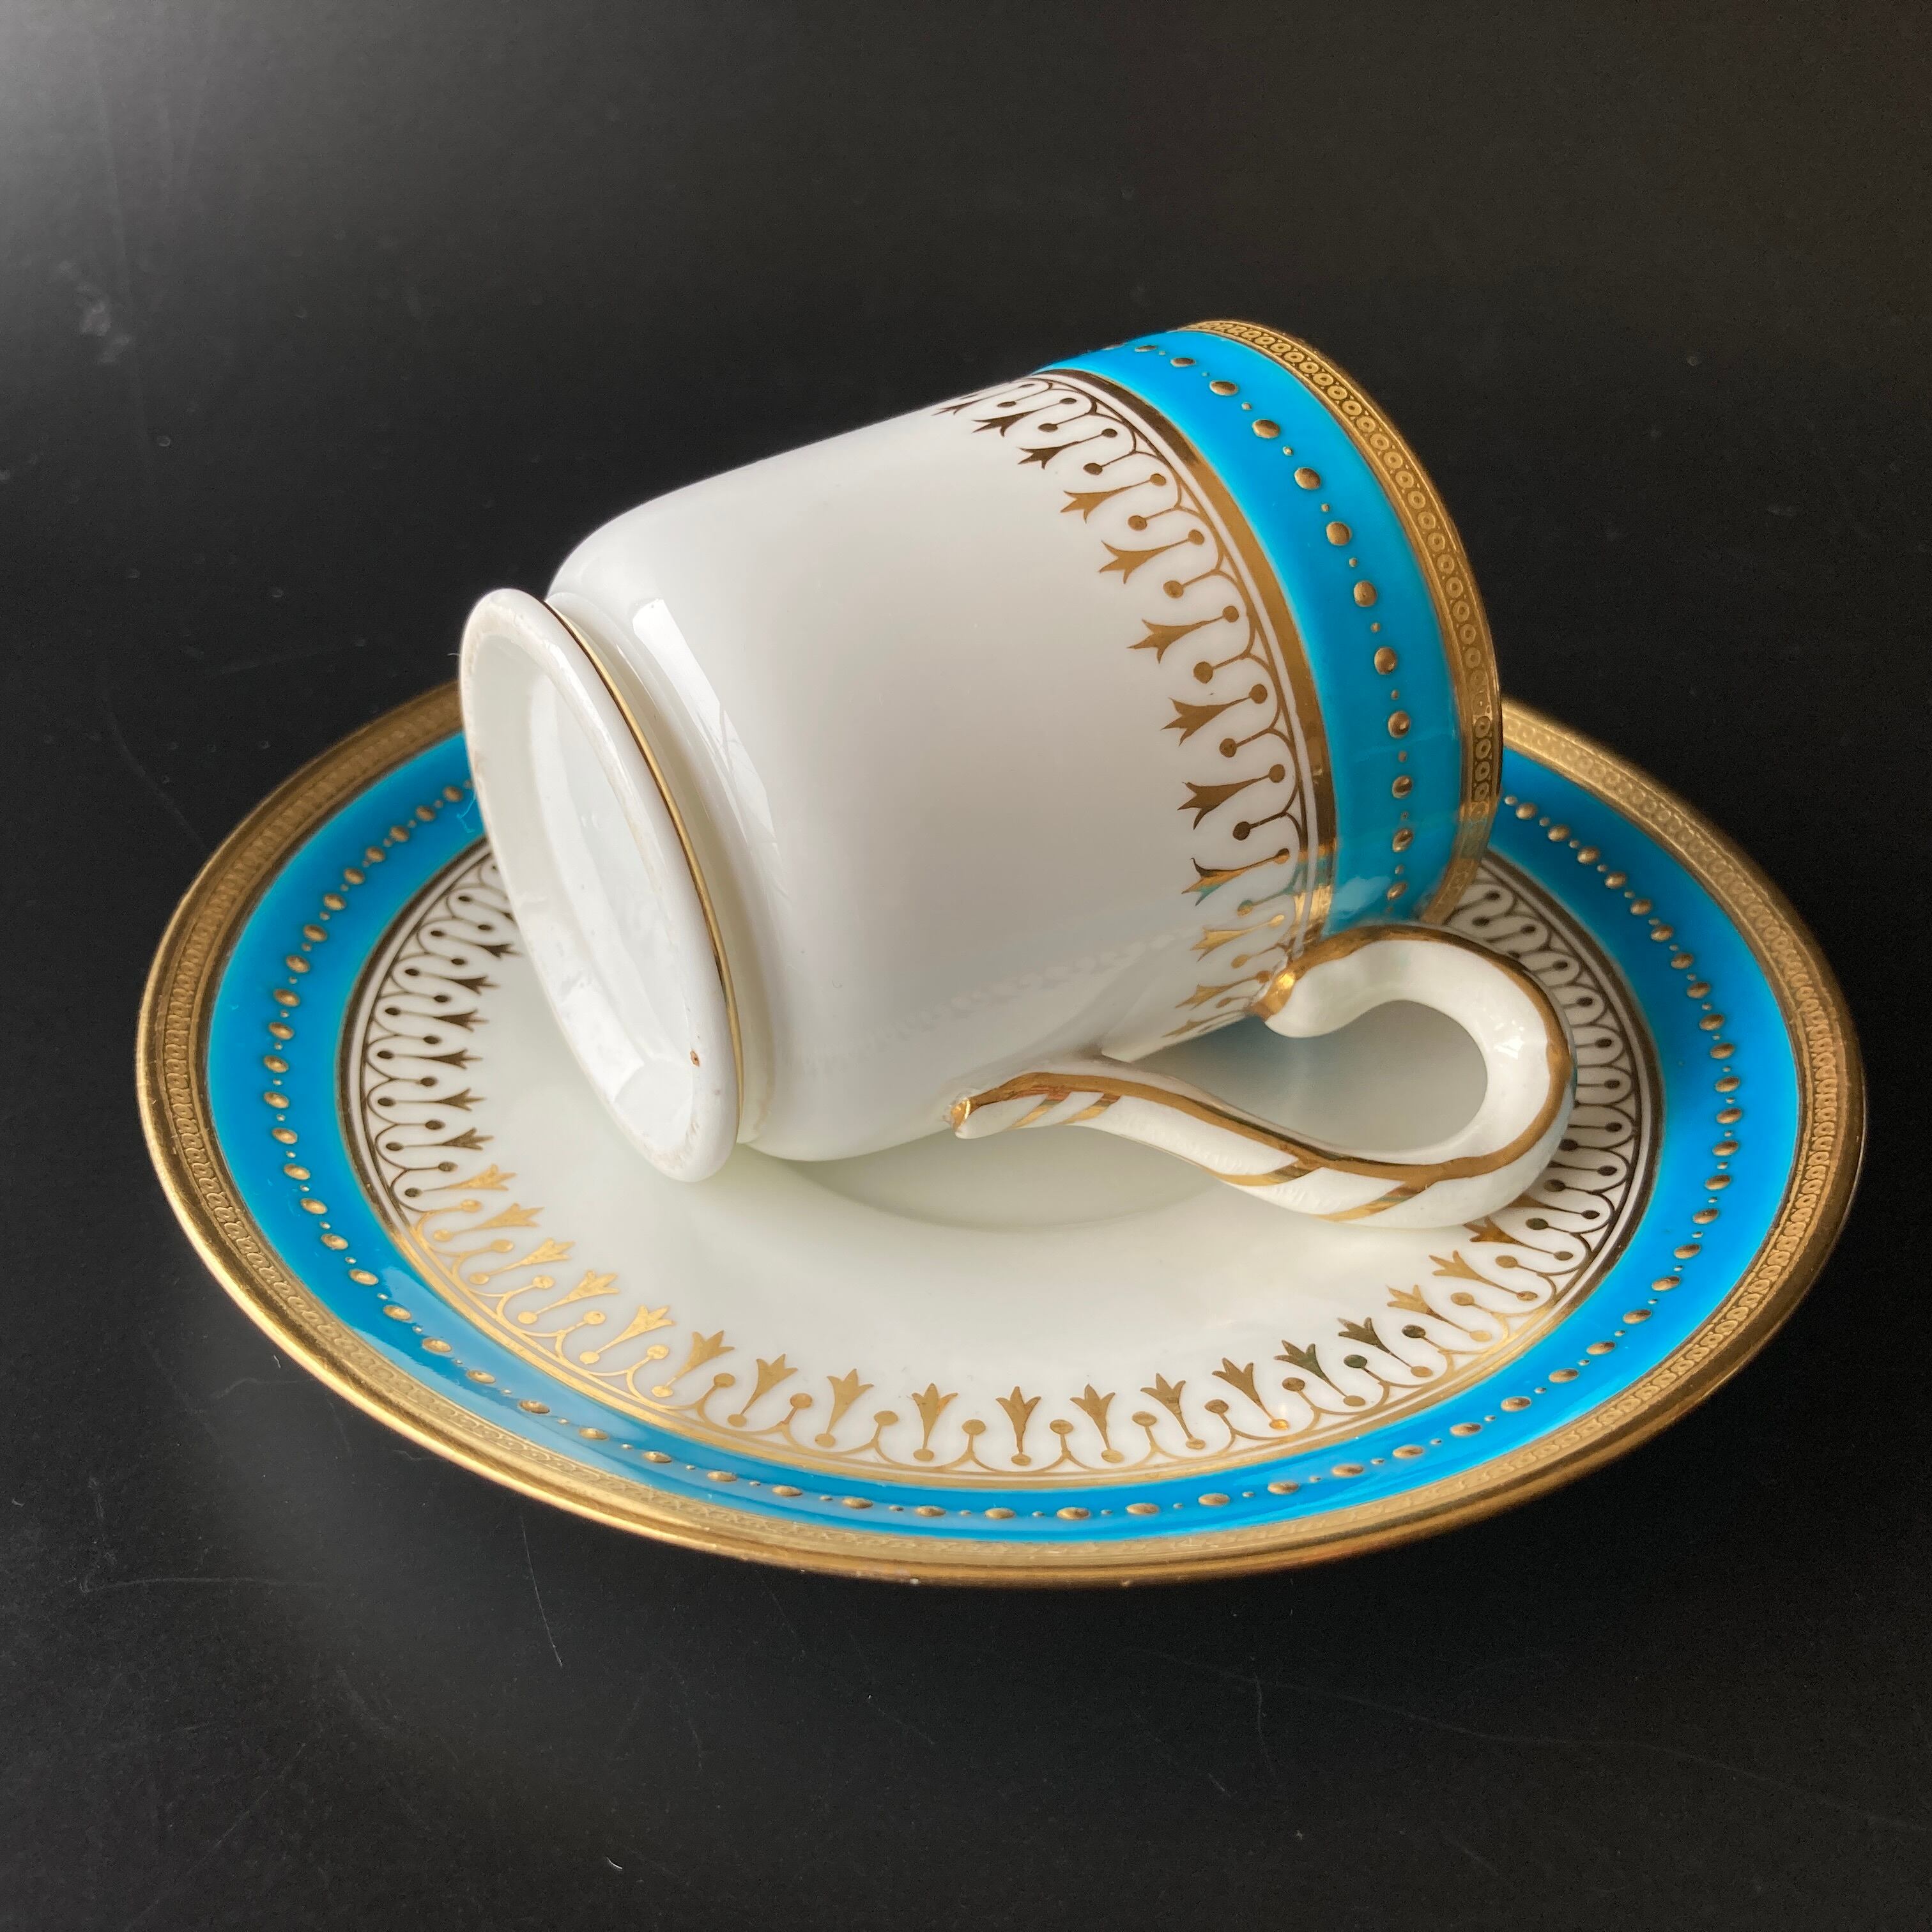 ミントン ターコイズブルー 風景絵図飾皿 金盛 大皿 プレート エナメル